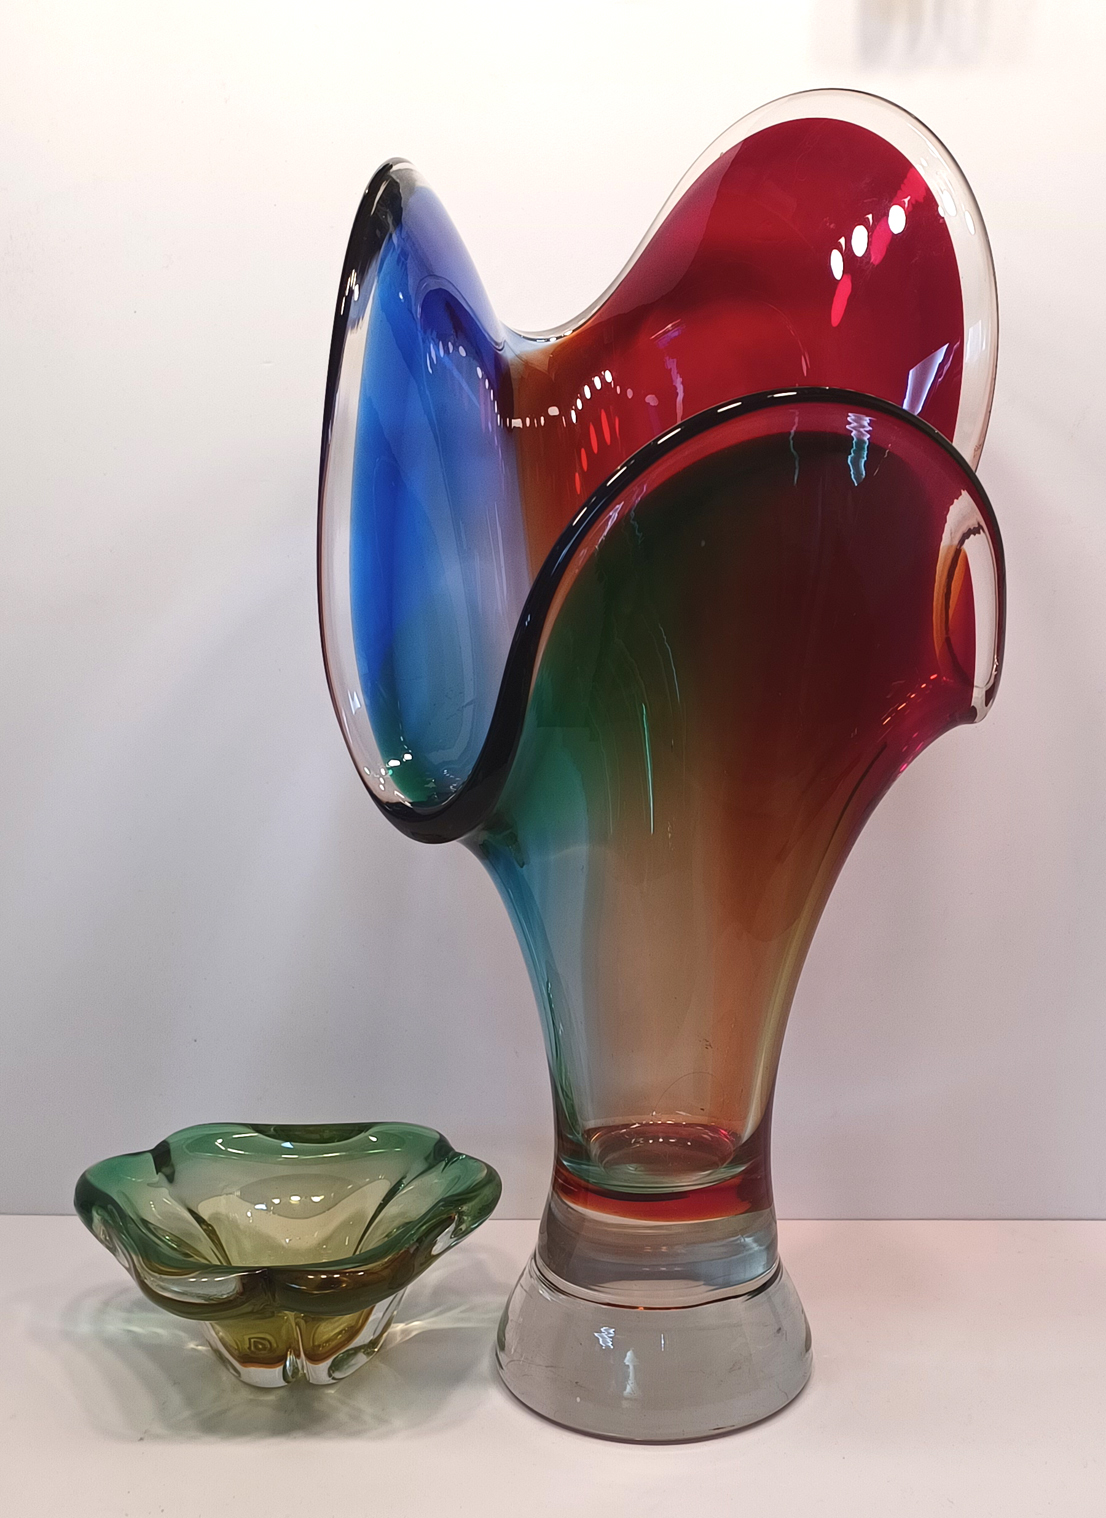 2 MURANO COLOURED ART GLASS 16" TALLEST 